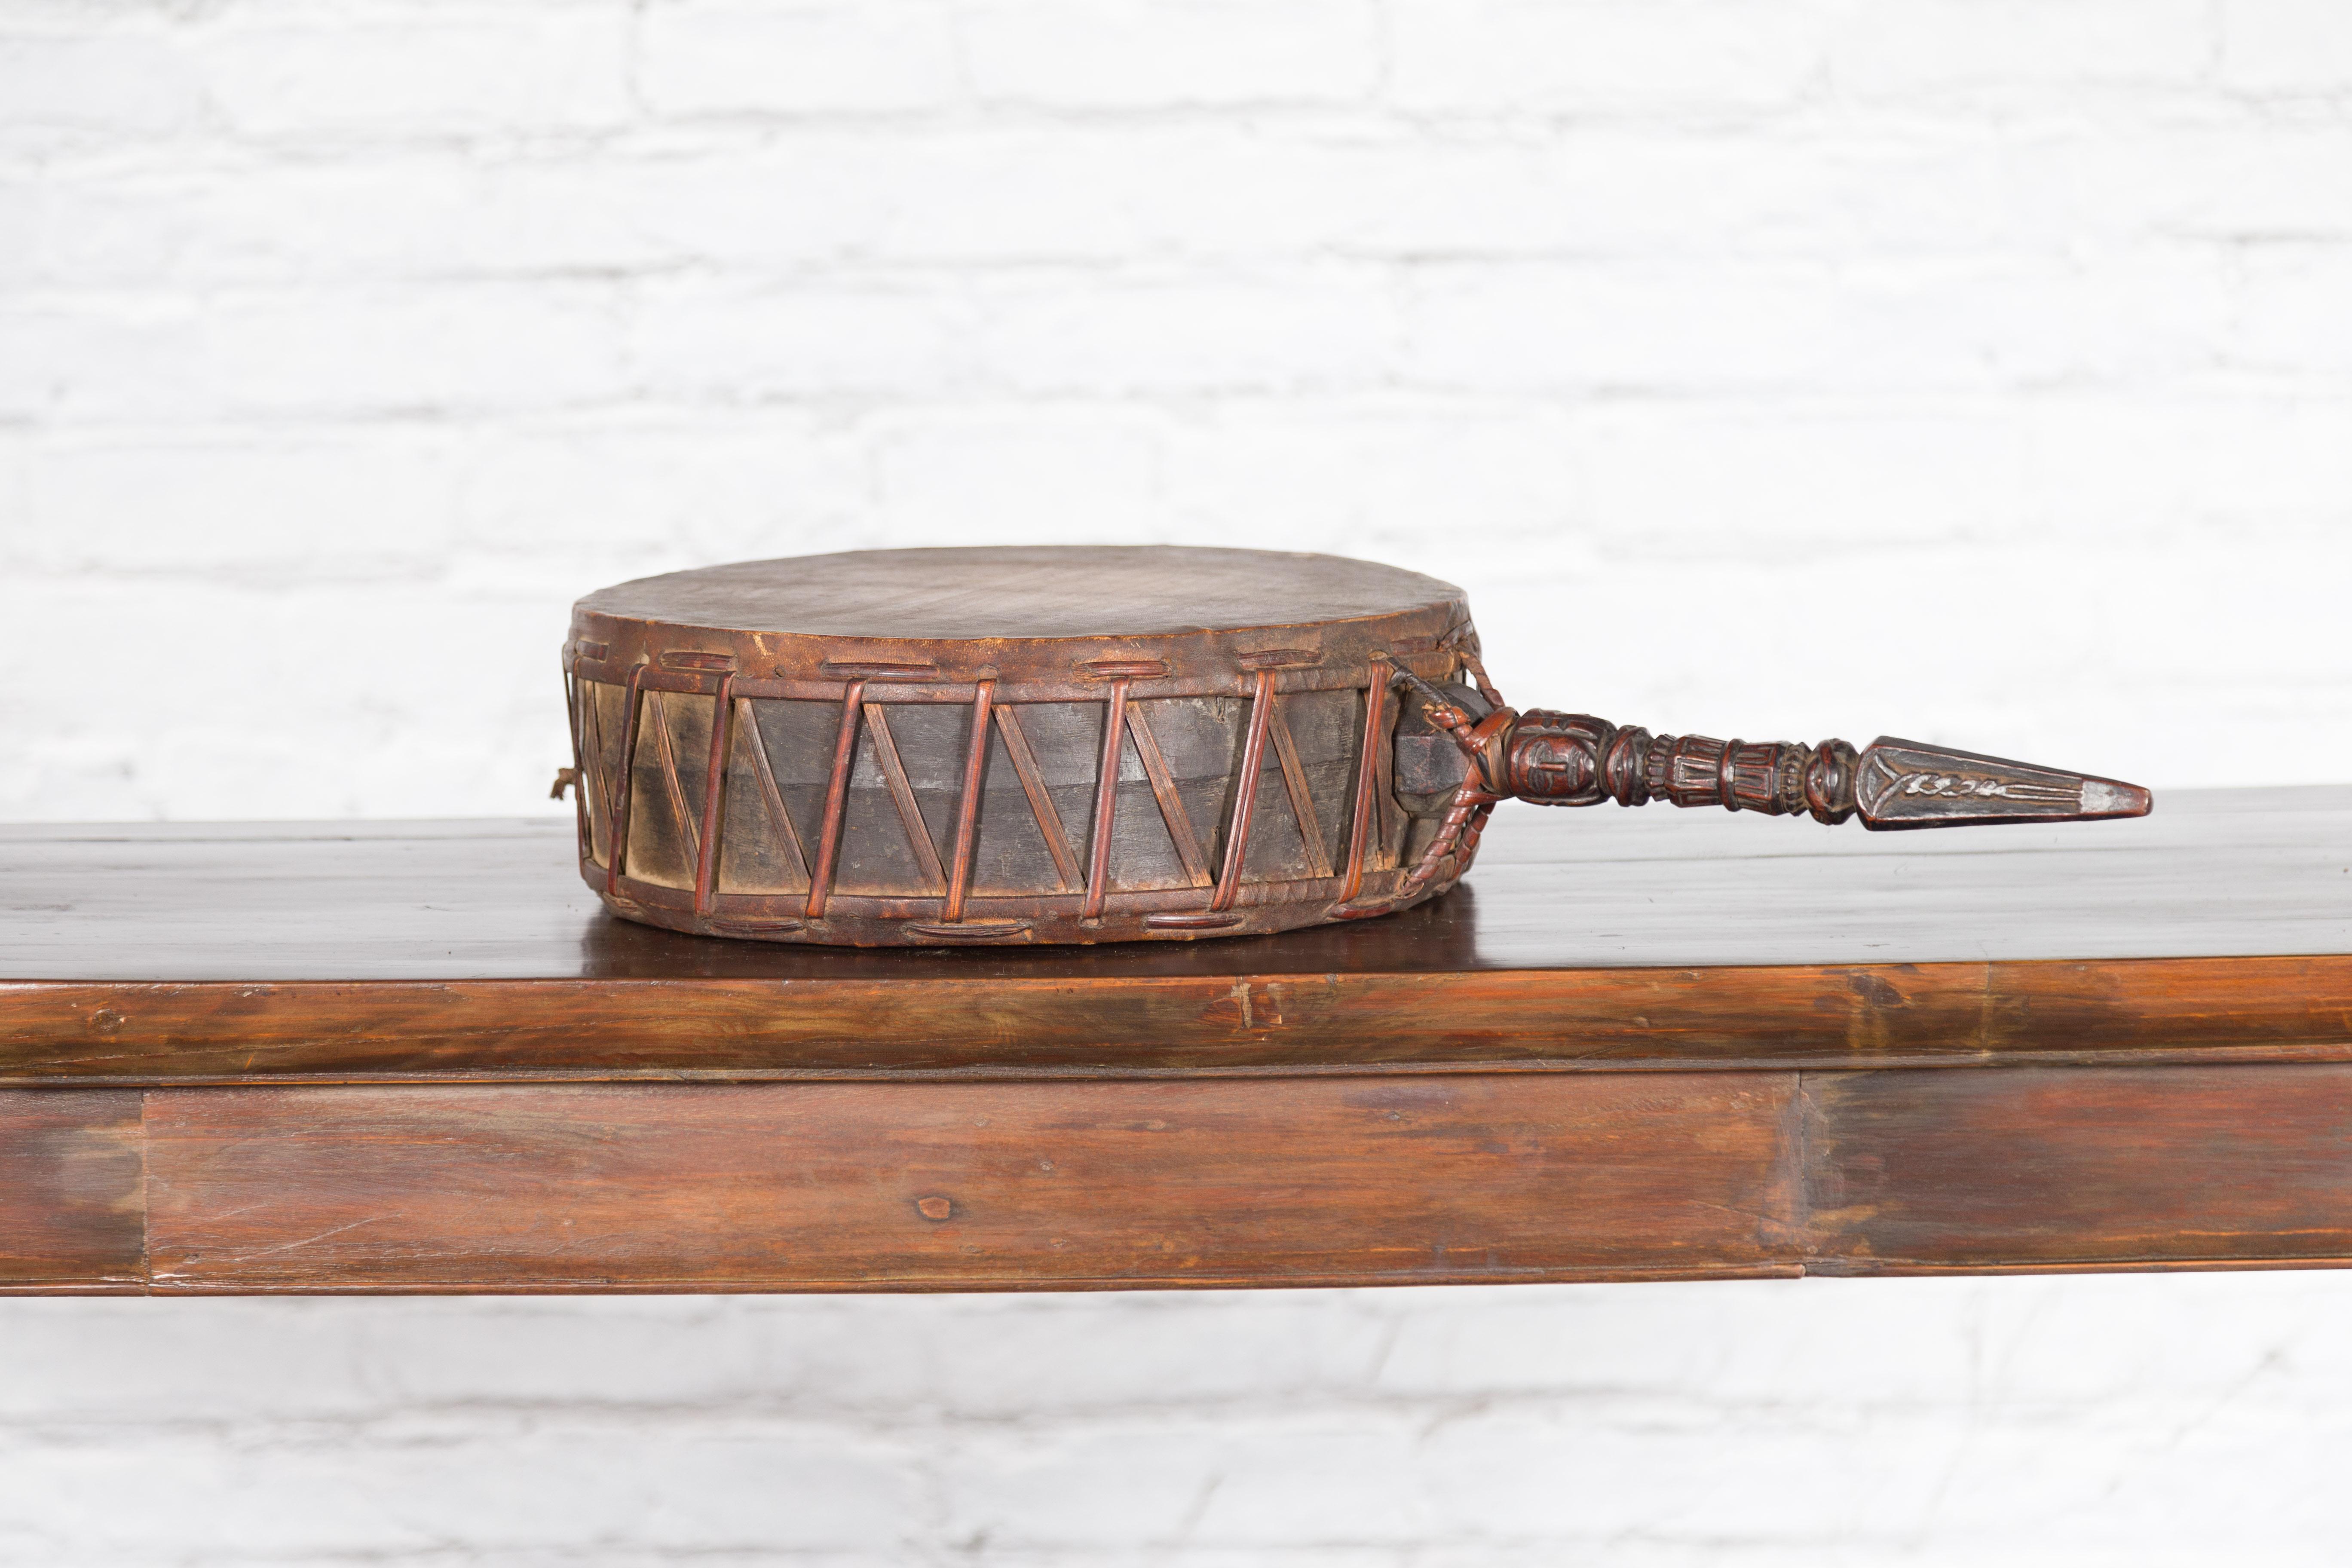 Ancien tambour à main népalais en cuir du XIXe siècle, avec un manche en bois sculpté à la main. Créé au Népal au cours du XIXe siècle, ce tambour à main se compose d'une peau circulaire en cuir à l'aspect joliment usé, reliée sur le côté à une